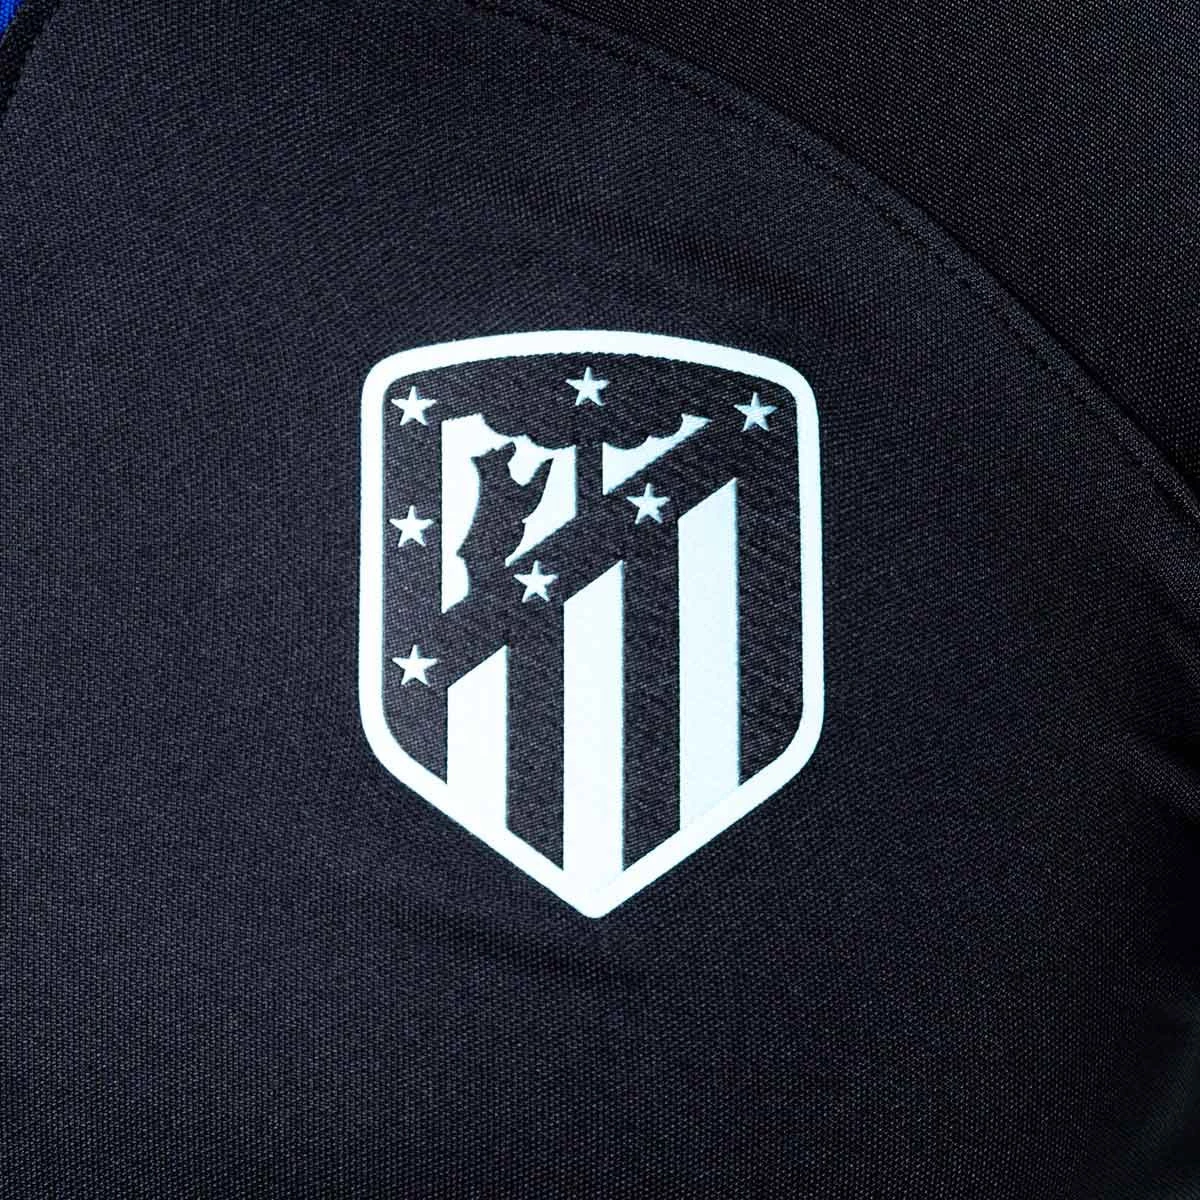 Camiseta Nike stadium de la 1ª equipación del Atlético de Madrid